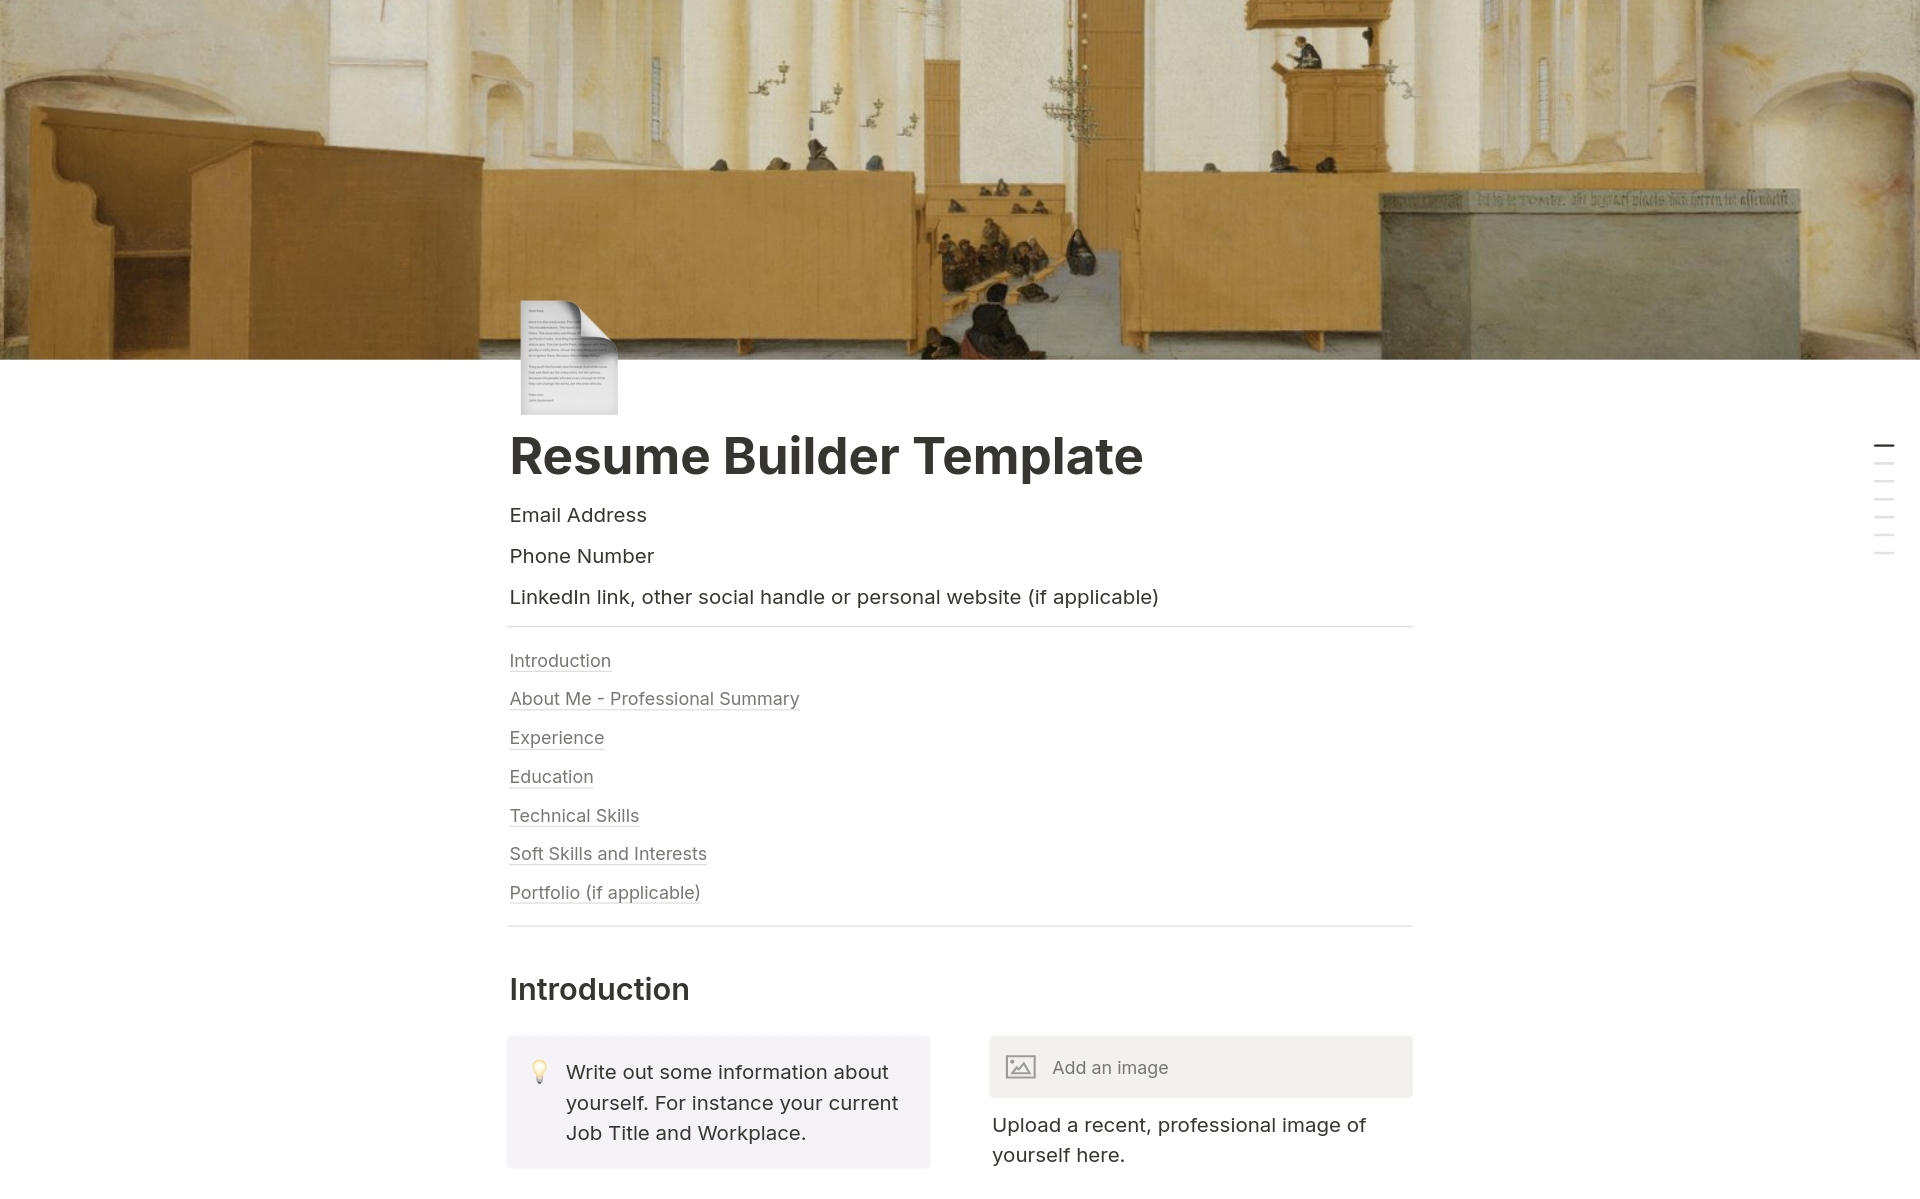 Vista previa de una plantilla para Resume Builder